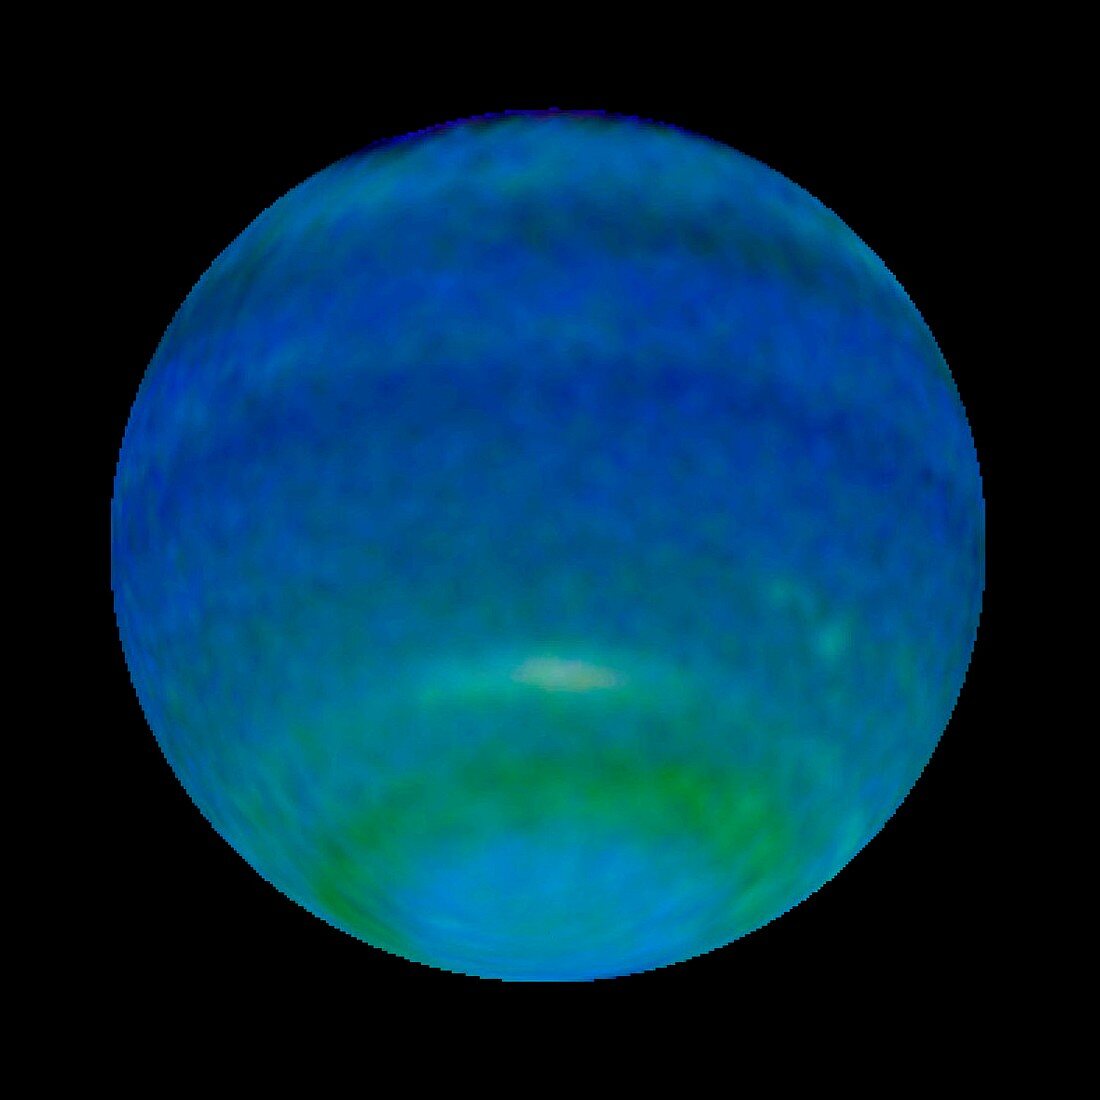 Neptune's changing seasons